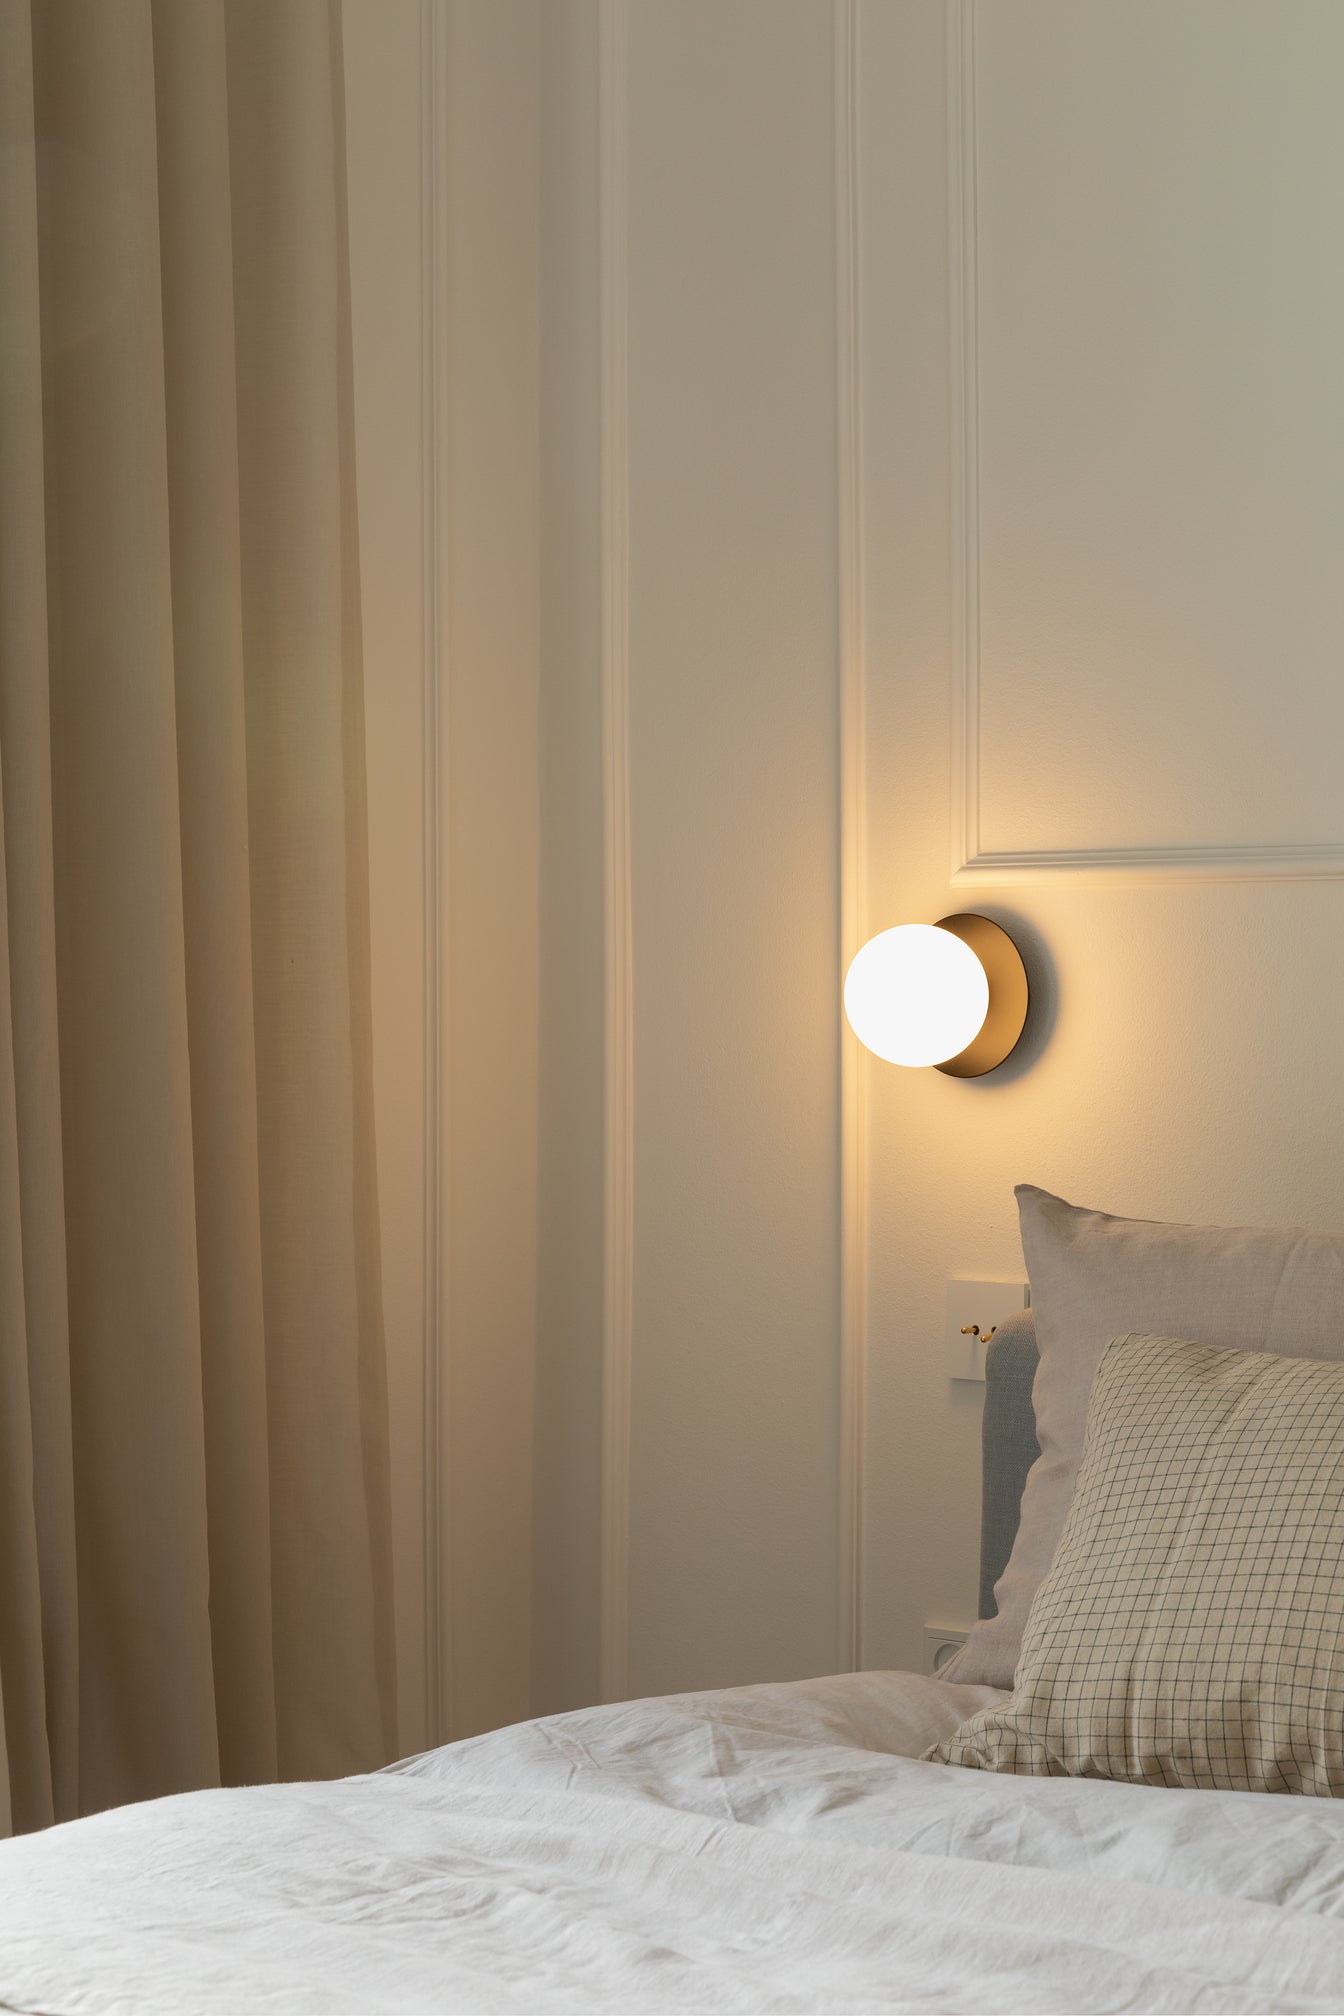 Væglampe med lampeskærm af opalglas og gylden fatning, i soveværelse